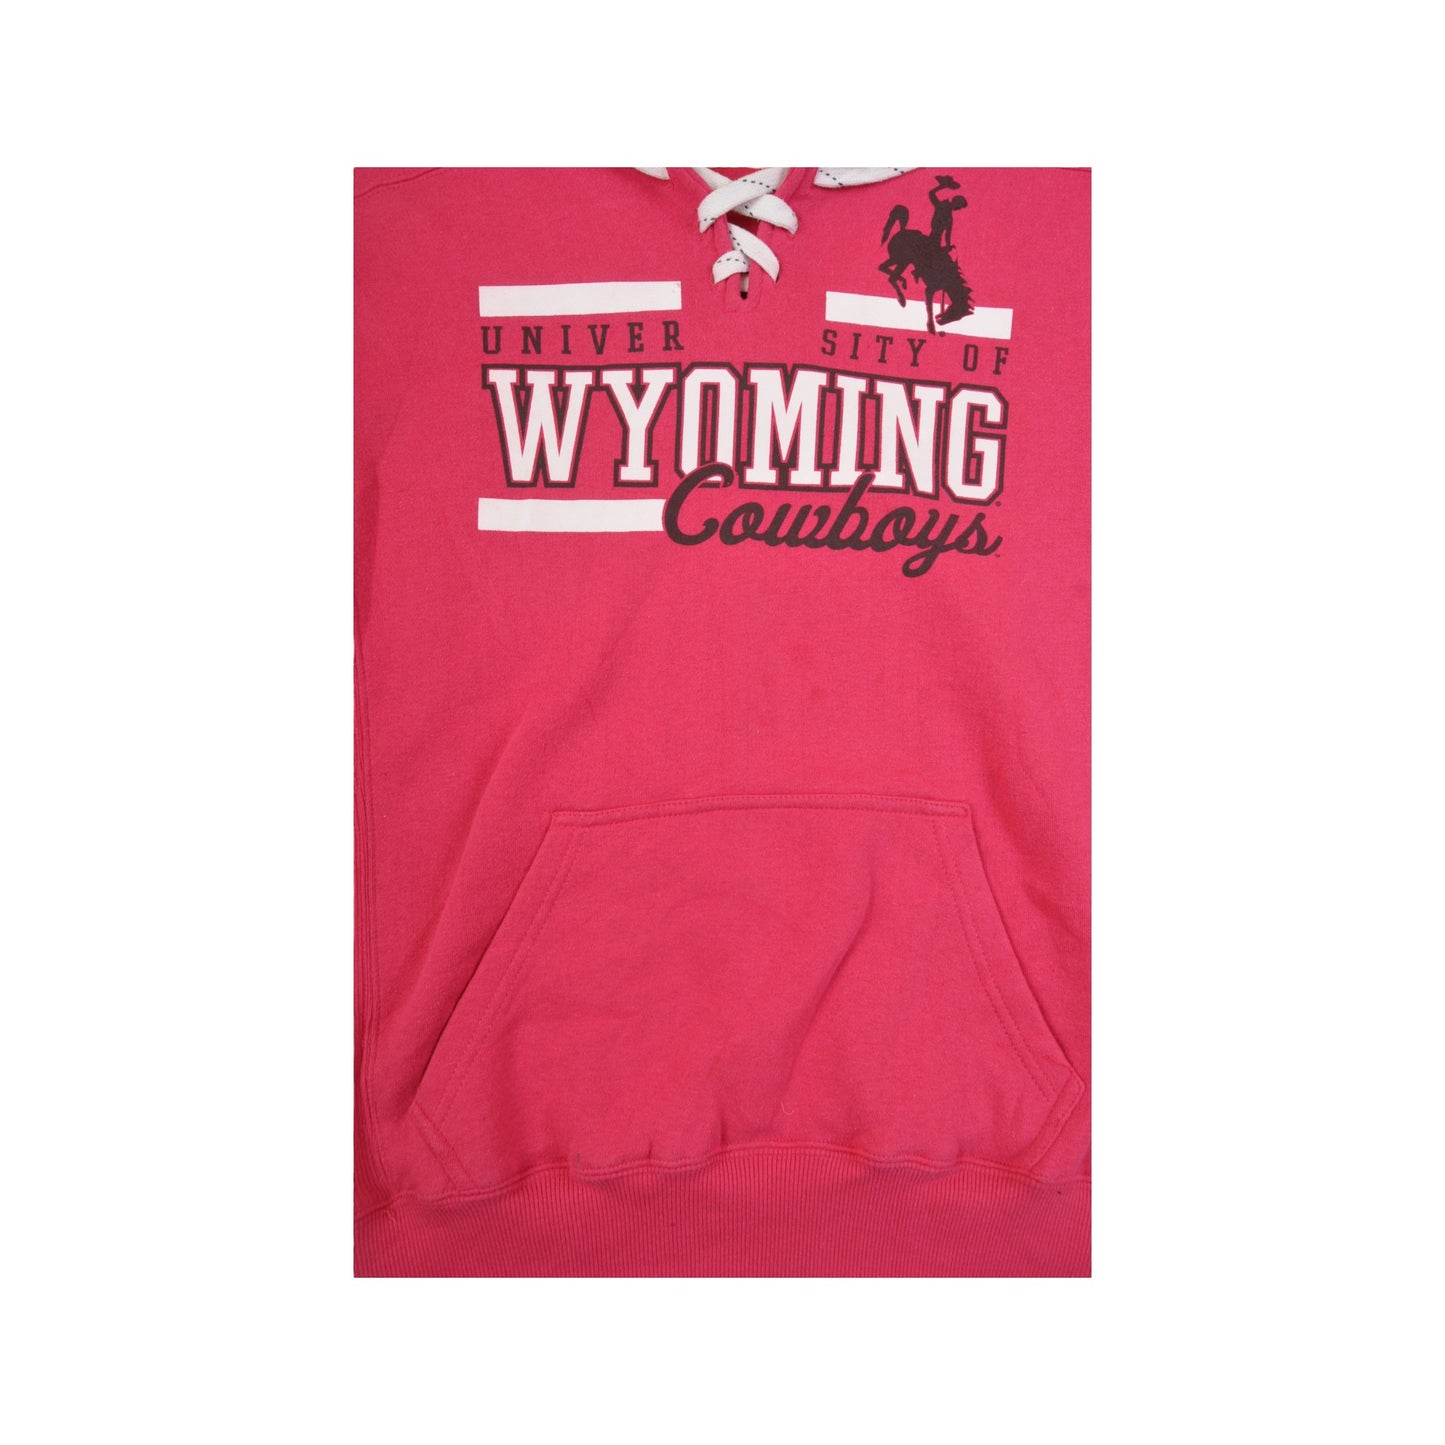 Vintage University Wyoming Cowboys Hoodie Sweatshirt Pink Ladies Large